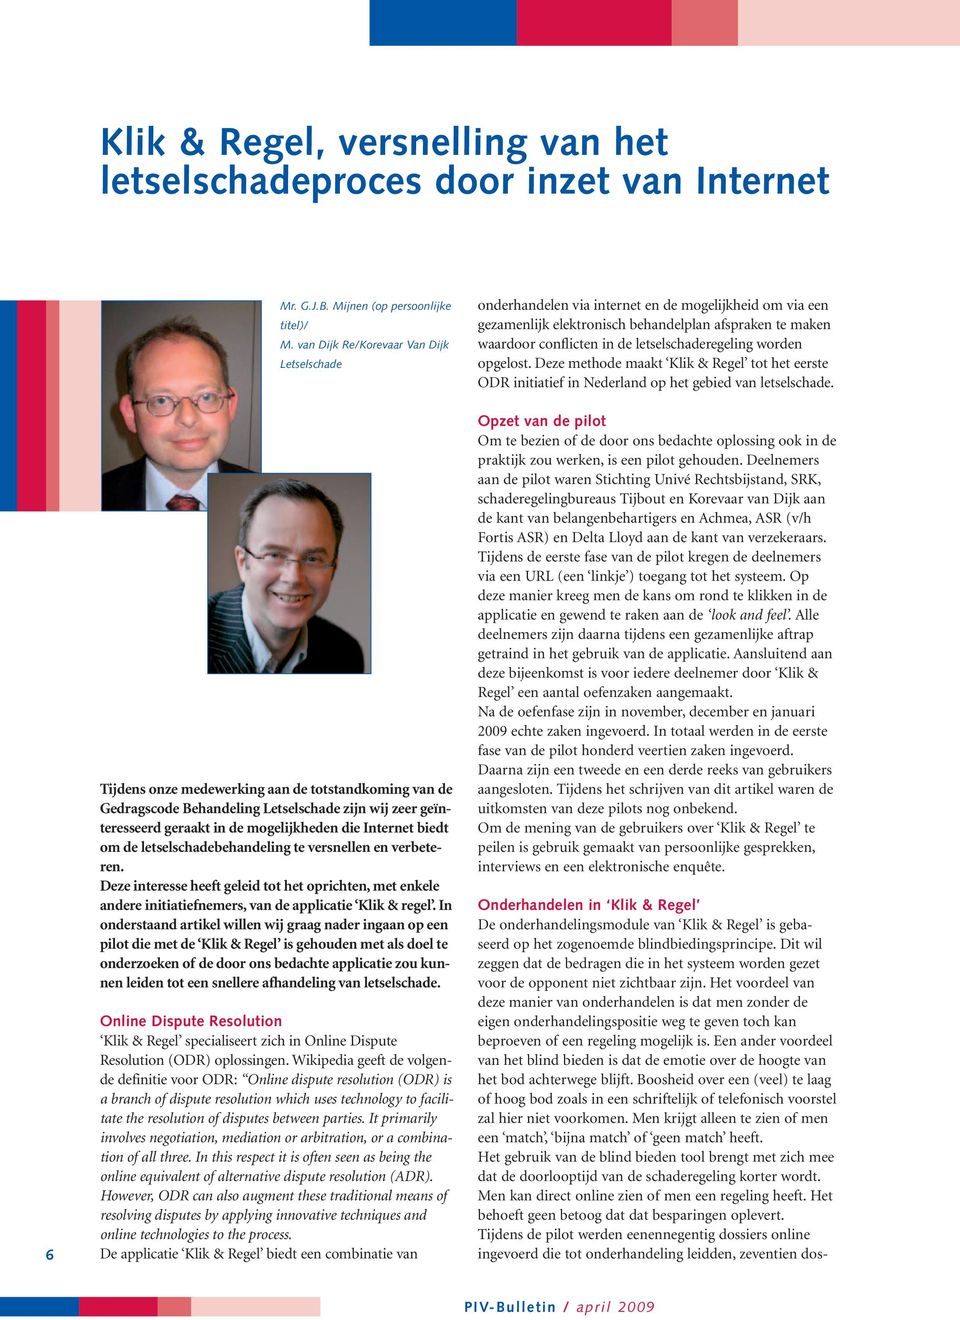 letselschaderegeling worden opgelost. Deze methode maakt Klik & Regel tot het eerste ODR initiatief in Nederland op het gebied van letselschade.